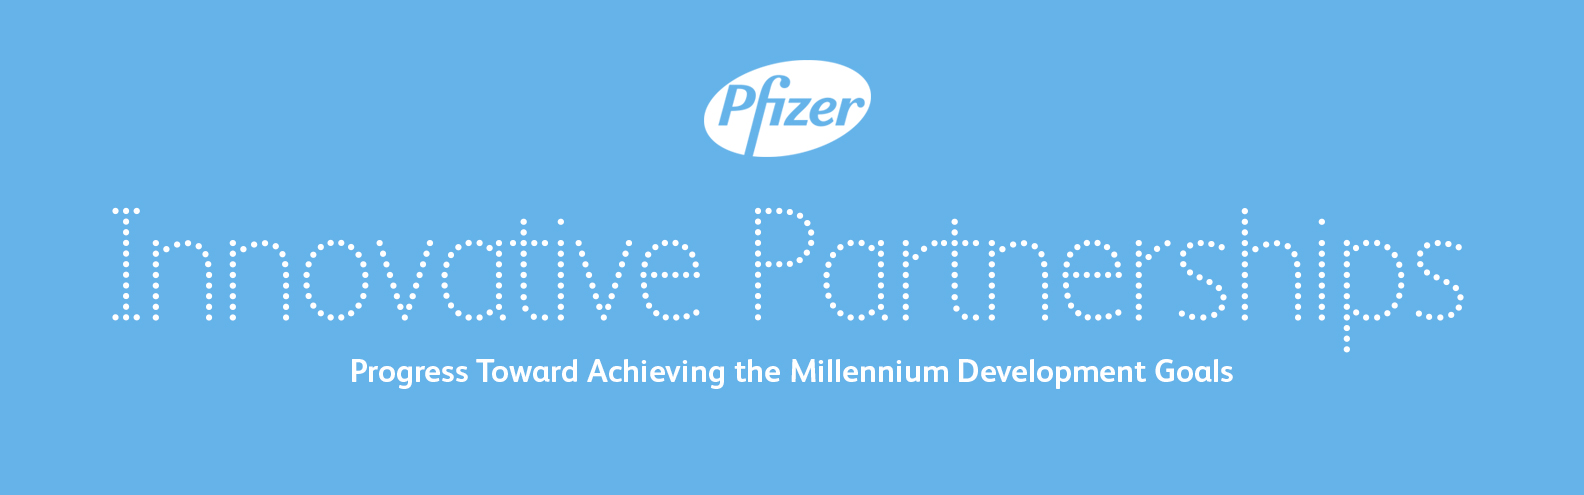 pfizer innovative partnerships header